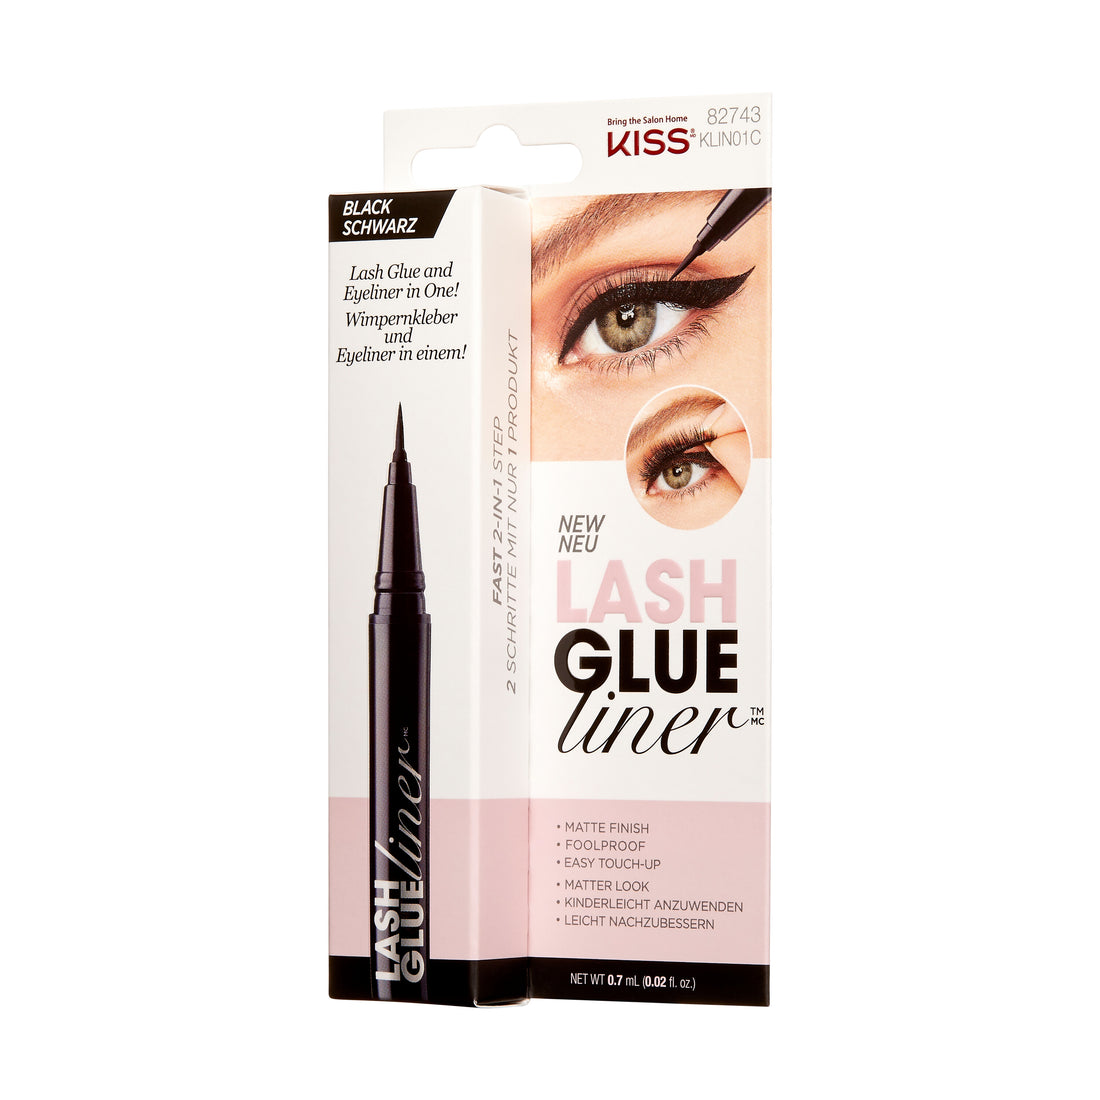 KISS Lash GLUEliner Matte Finish False Eyelash Glue, 0.7 mL (0.02 fl. oz.), Černá